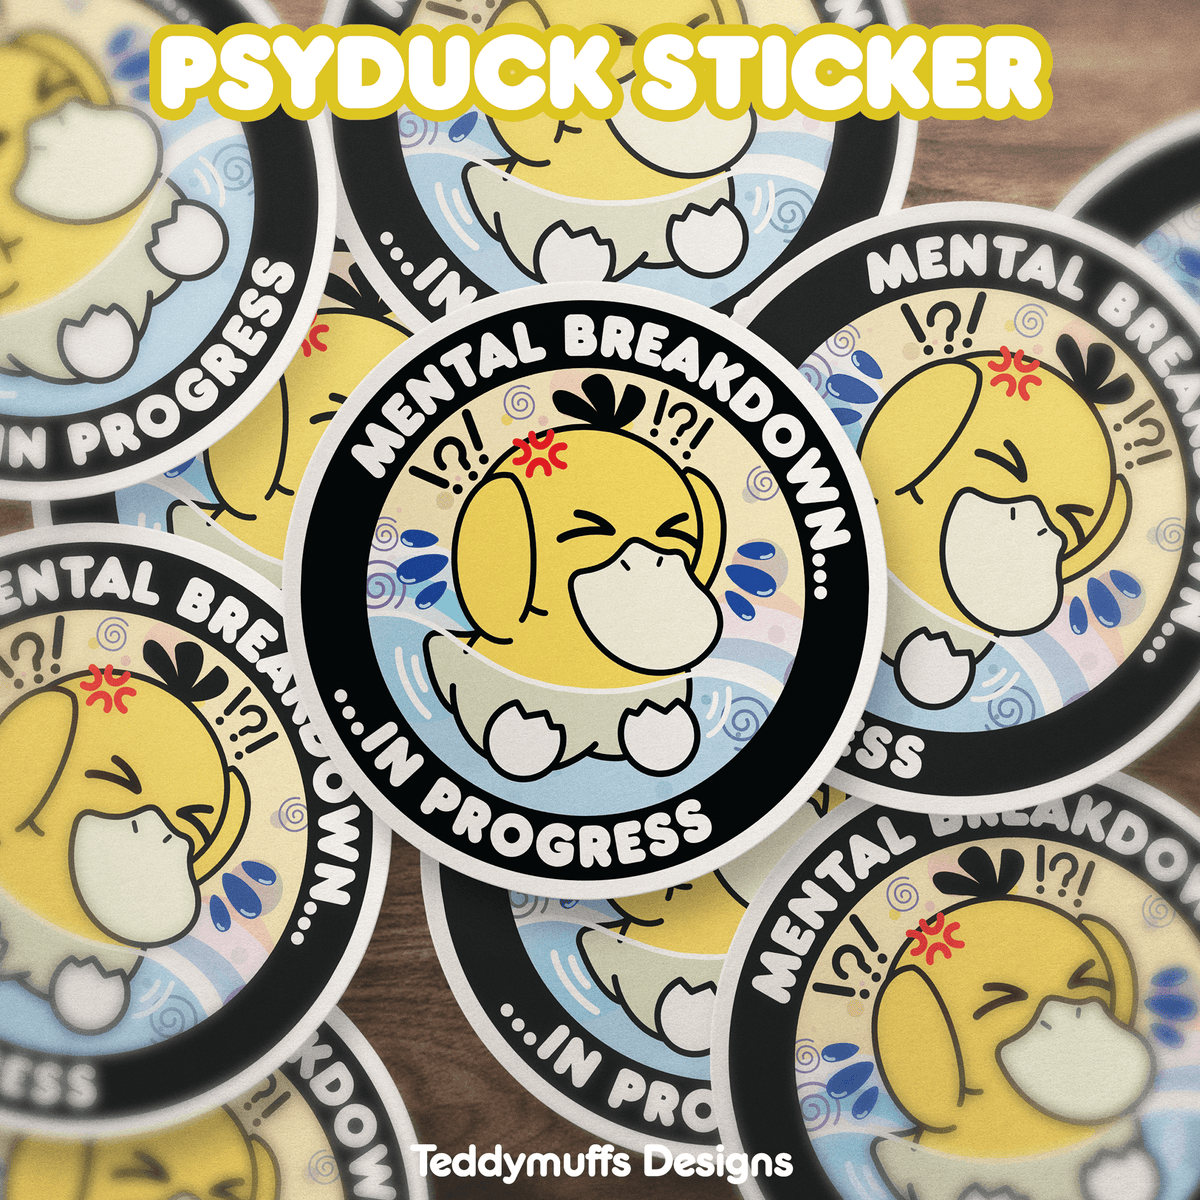 Psyduck Sticker - Teddymuffs Designs